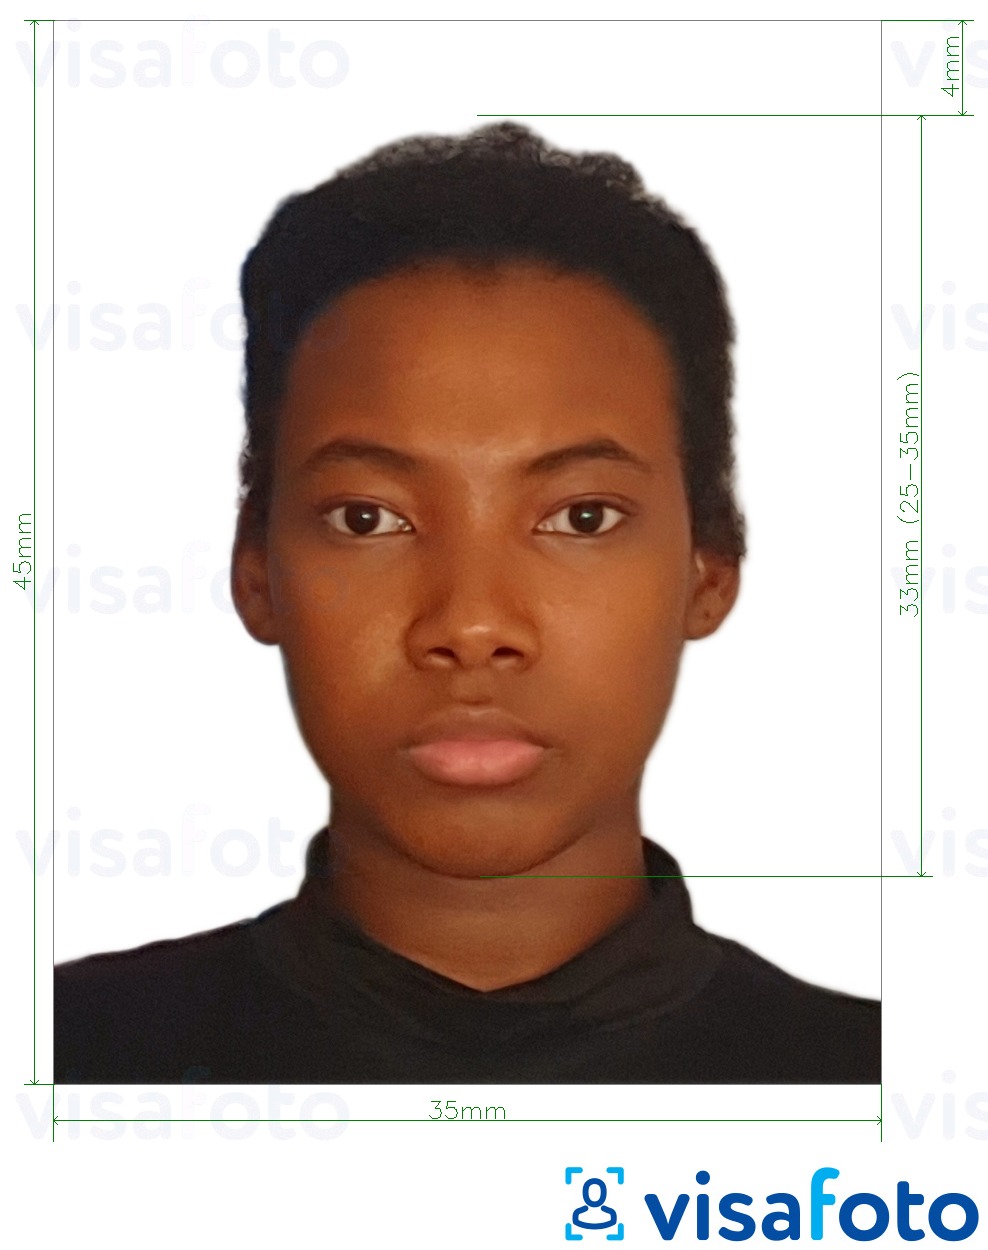 Esimerkkikuva Jamaikan passi 35x45 mm (3,5x4,5 cm), joka täyttää tarkat kokovaatimukset